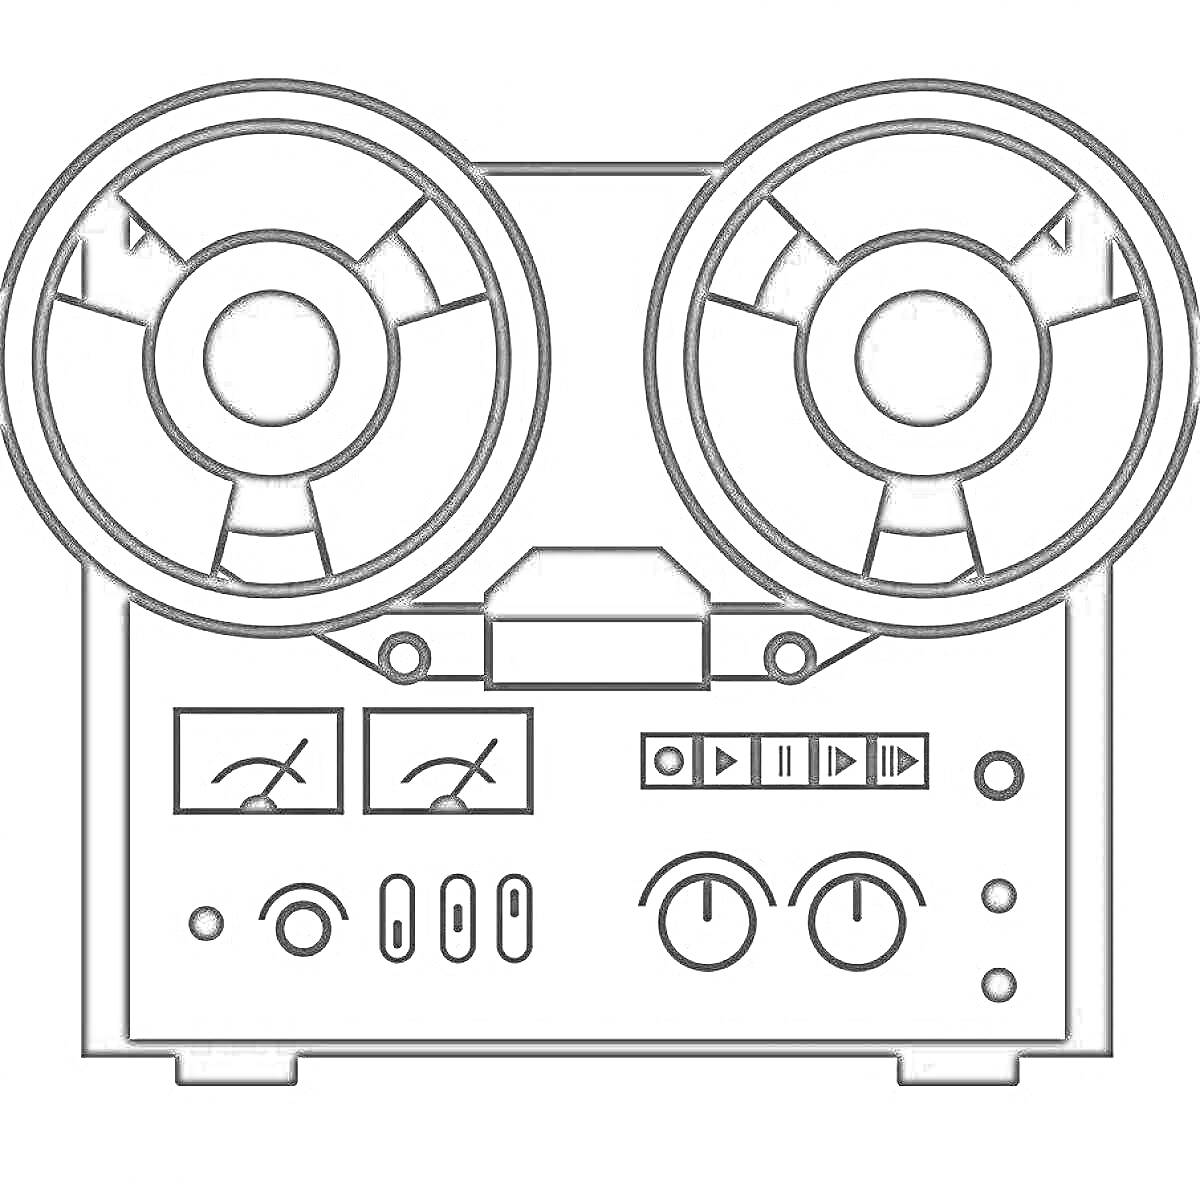 Магнитофон с катушками, индикаторами, кнопками управления и регуляторами